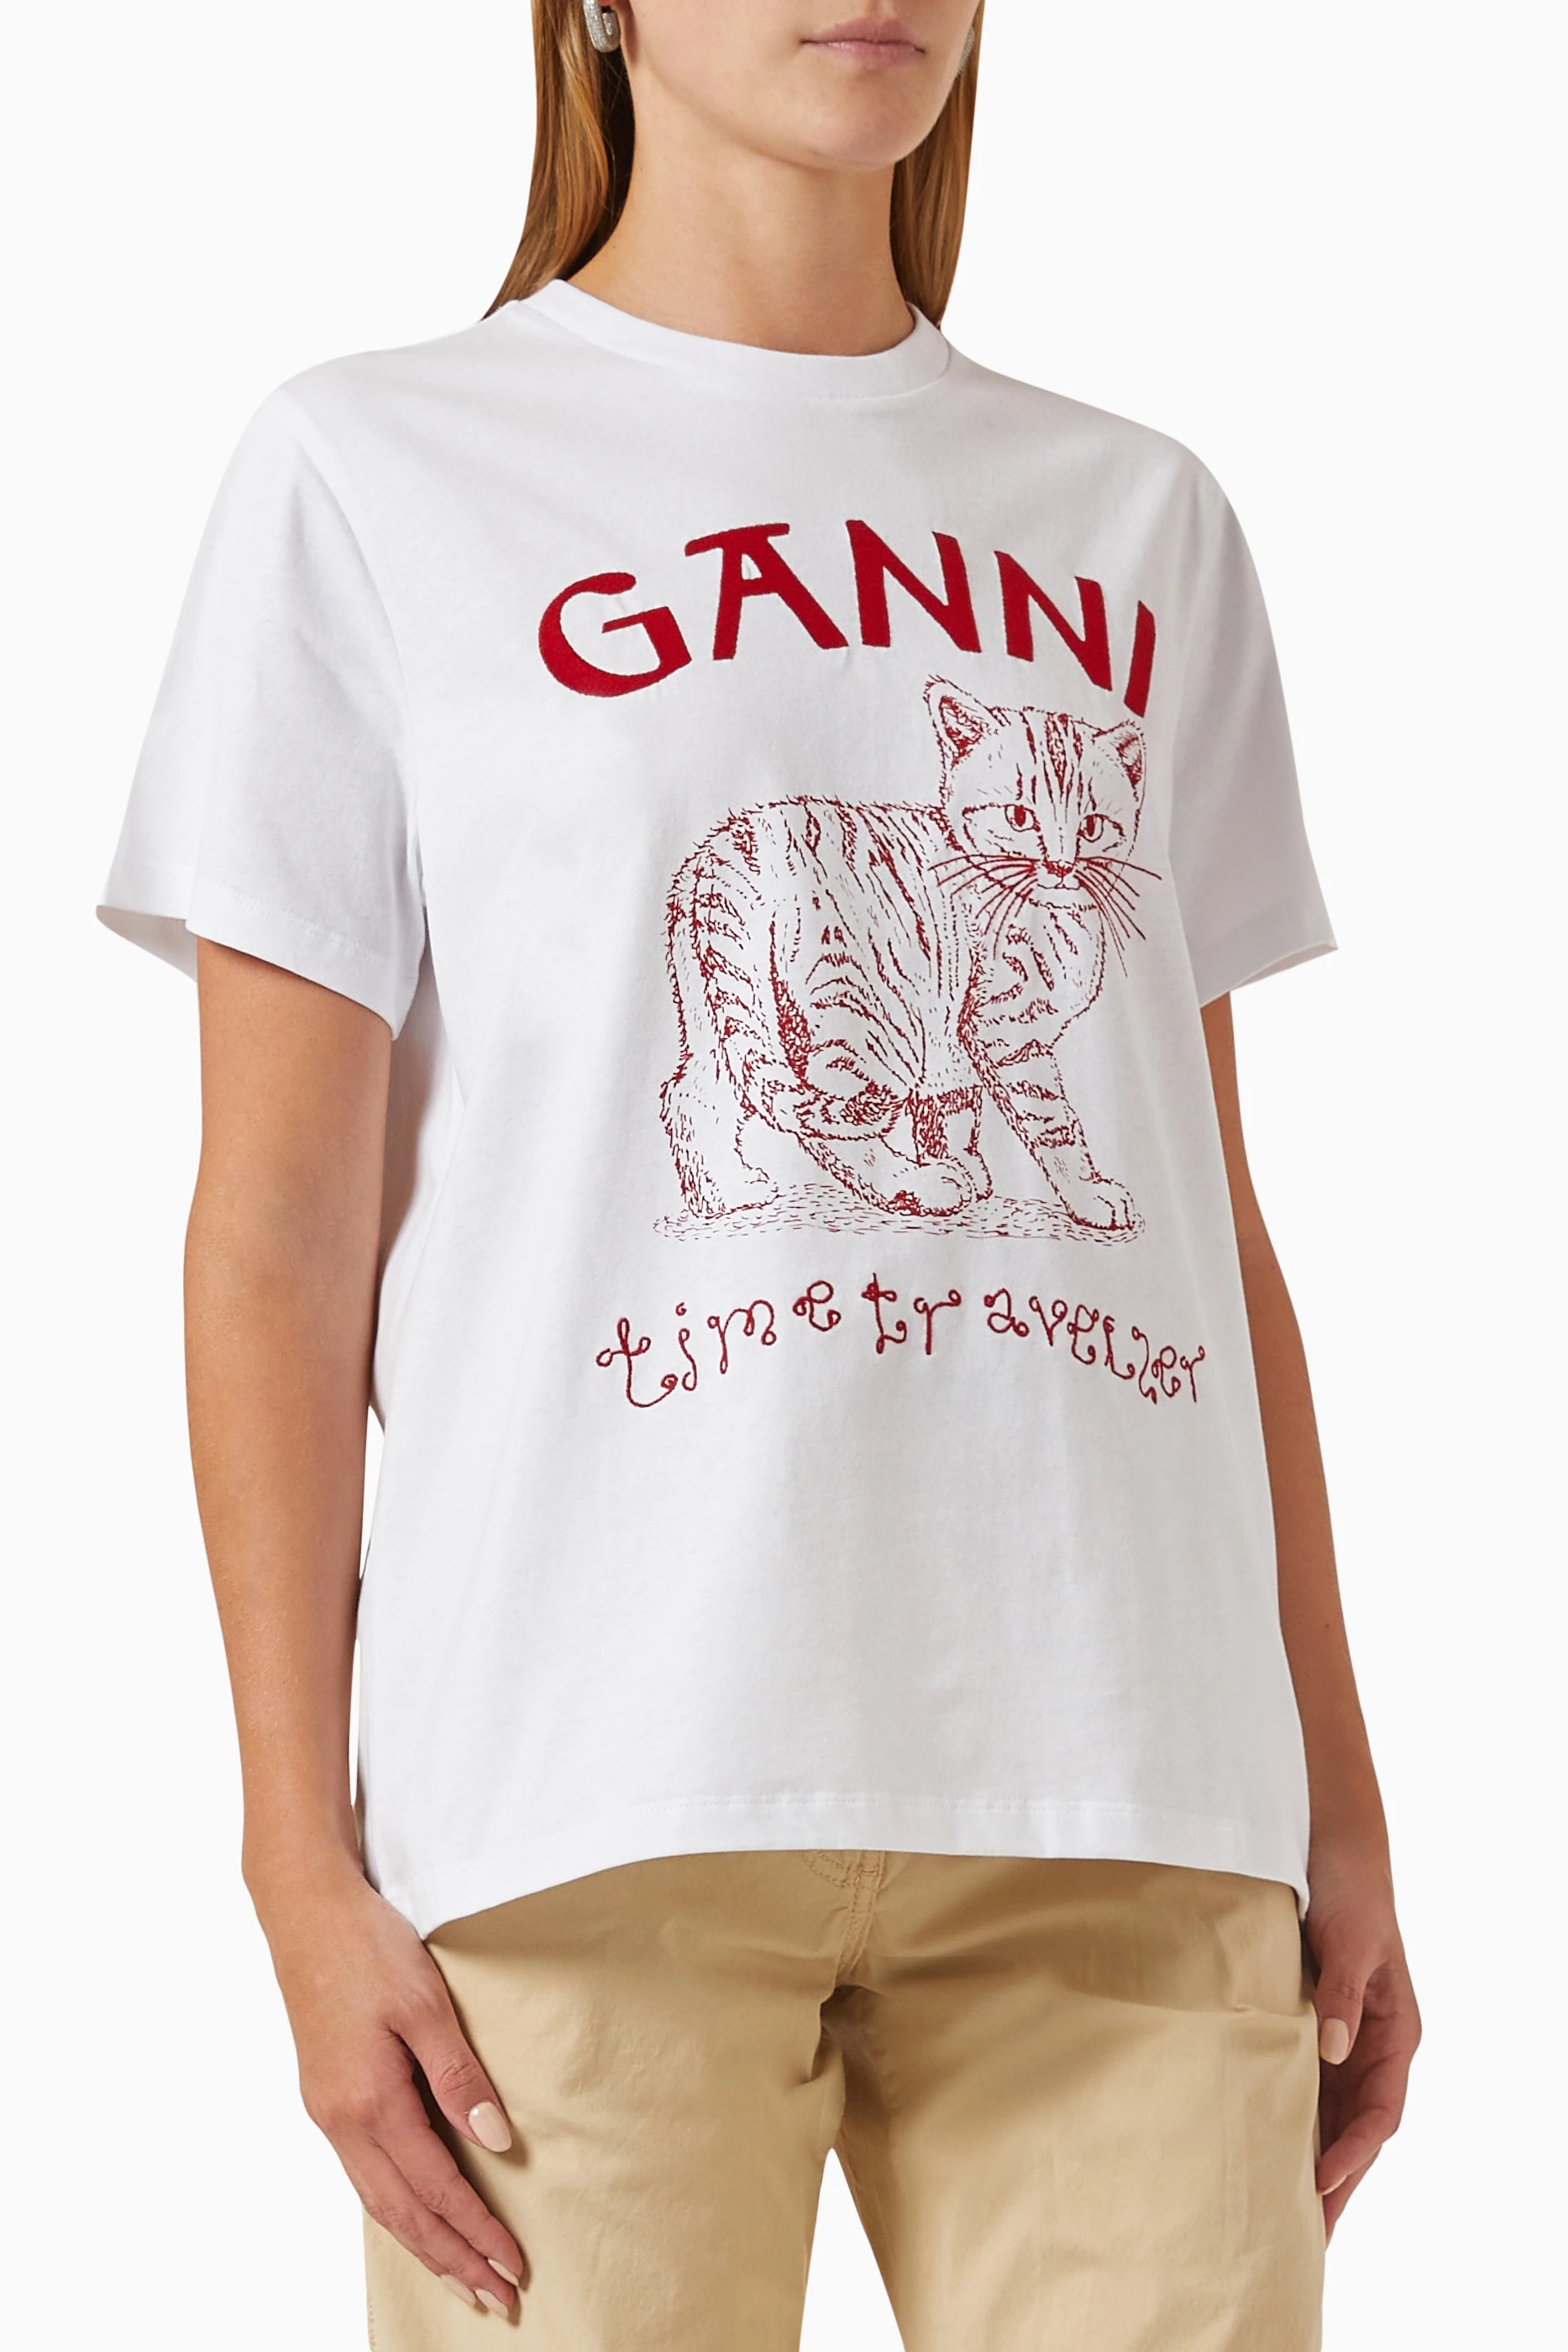 Ganni Future T-Shirt - White